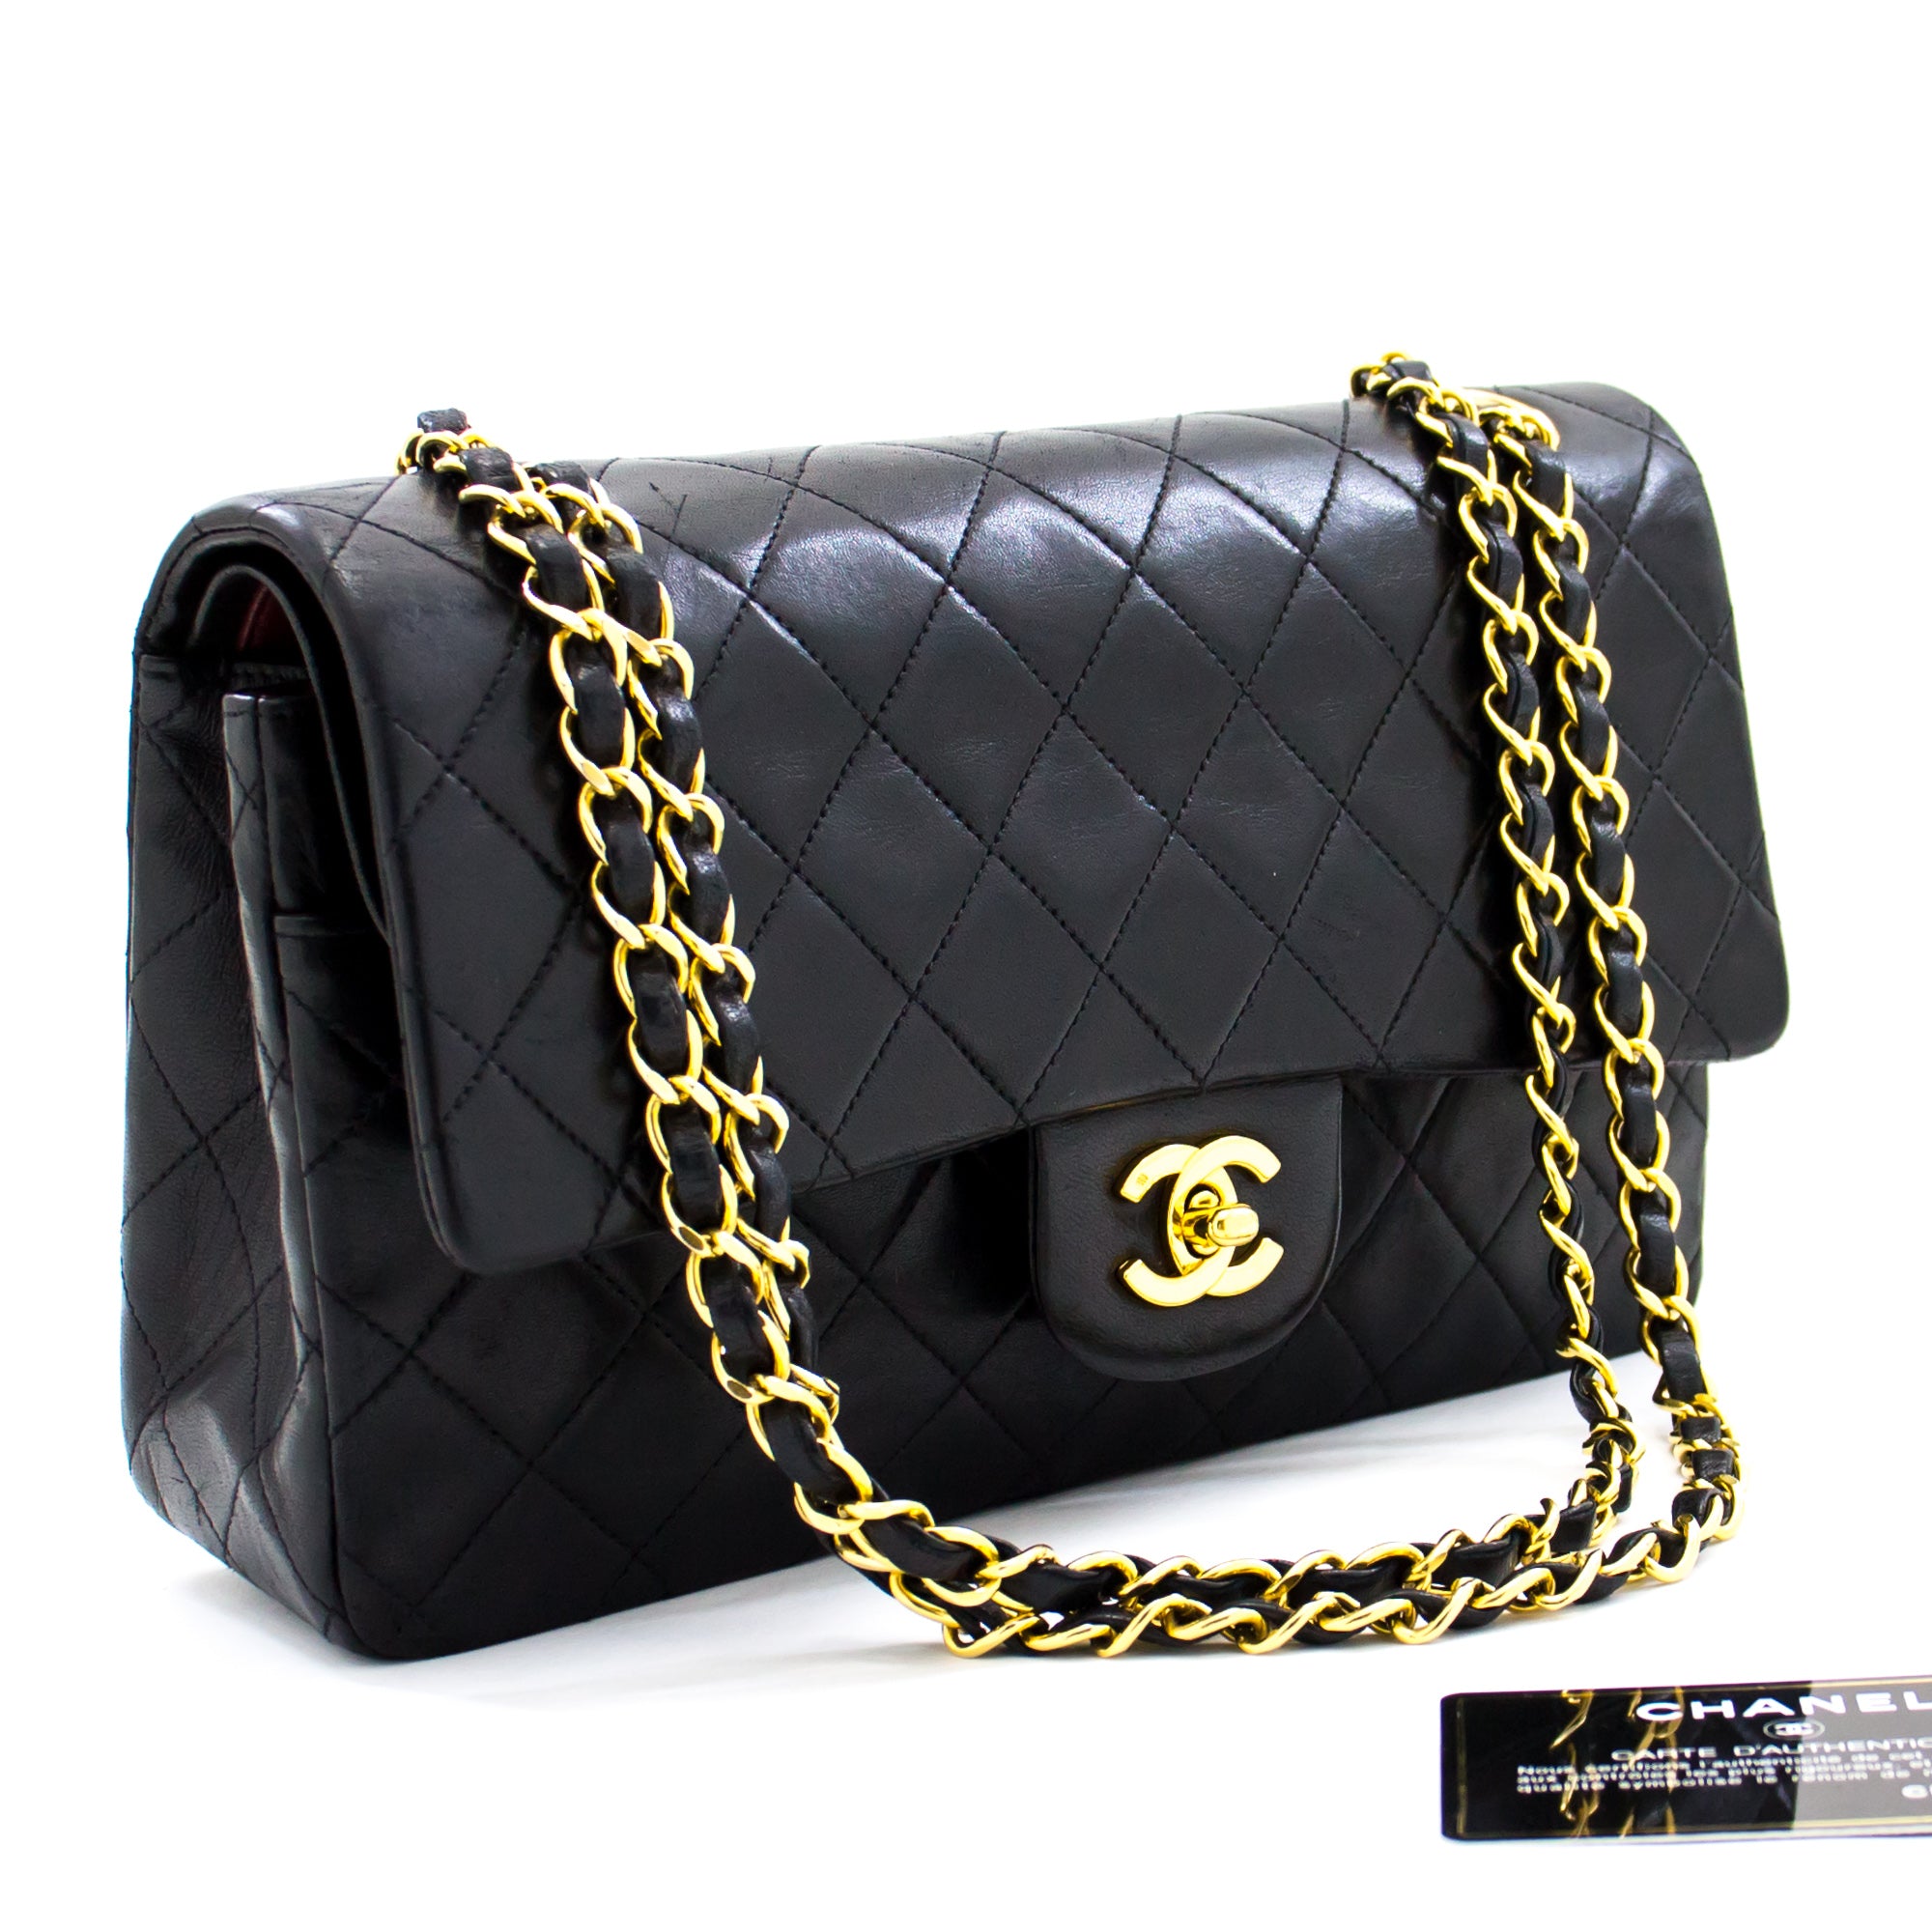 Chanel 2.55 Double Flap Medium Chain Shoulder Bag